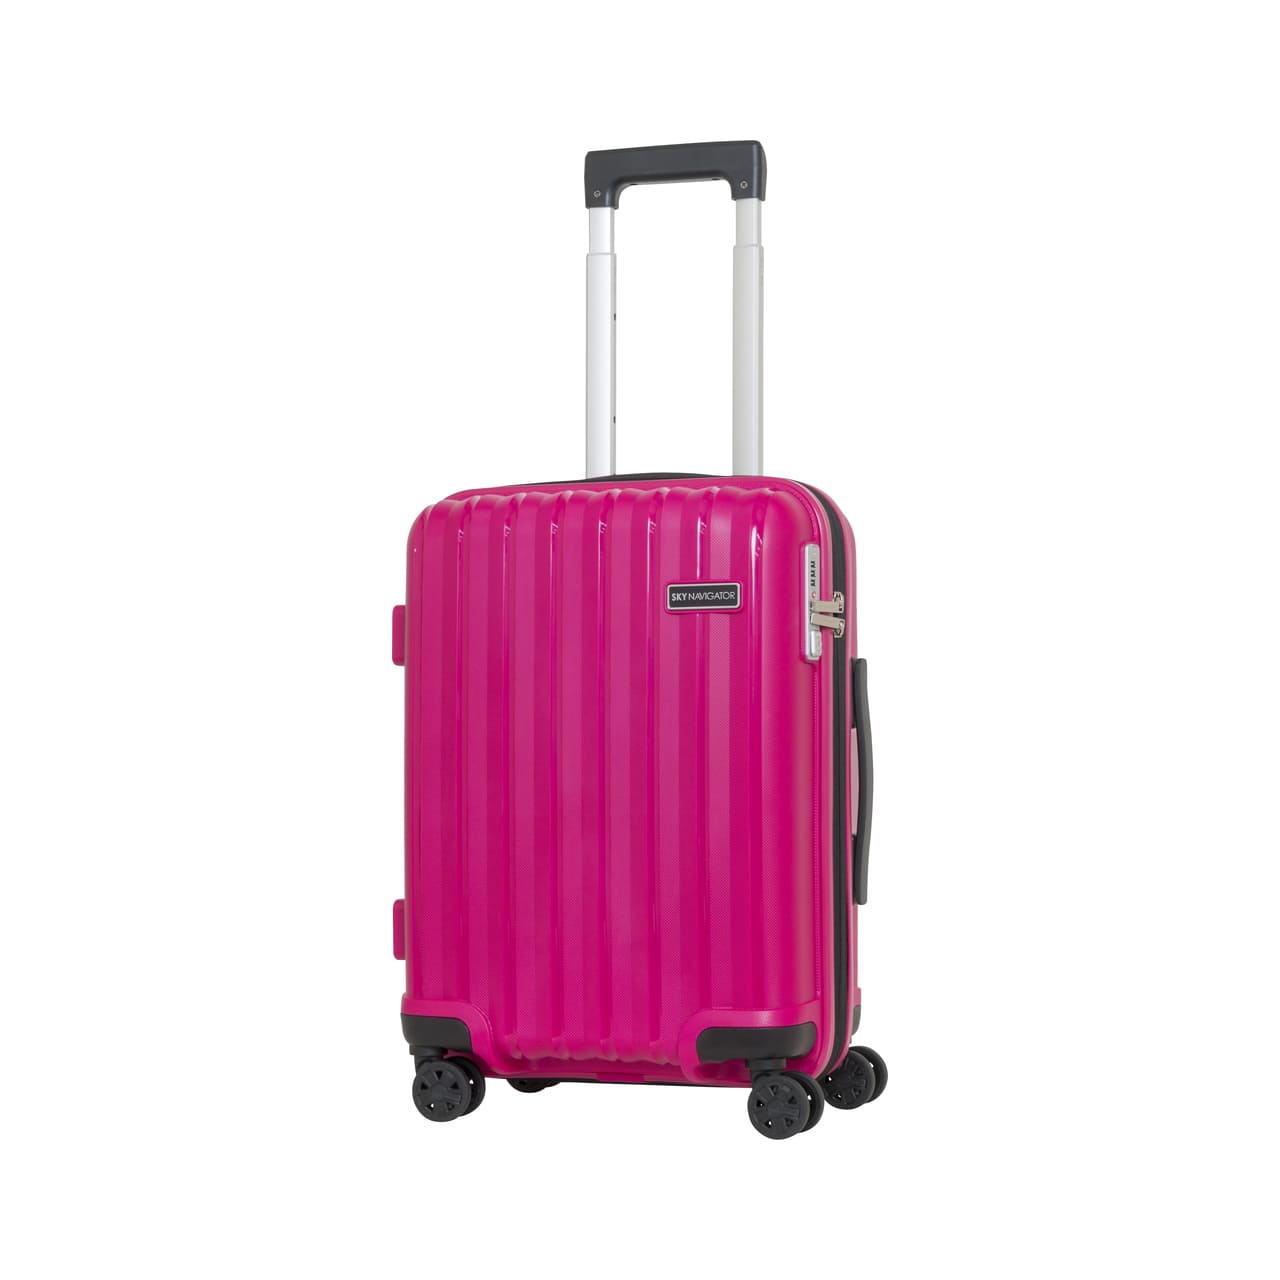 SKYNAVIGATORのスーツケースSK-0777-49のピンクの正面振り画像